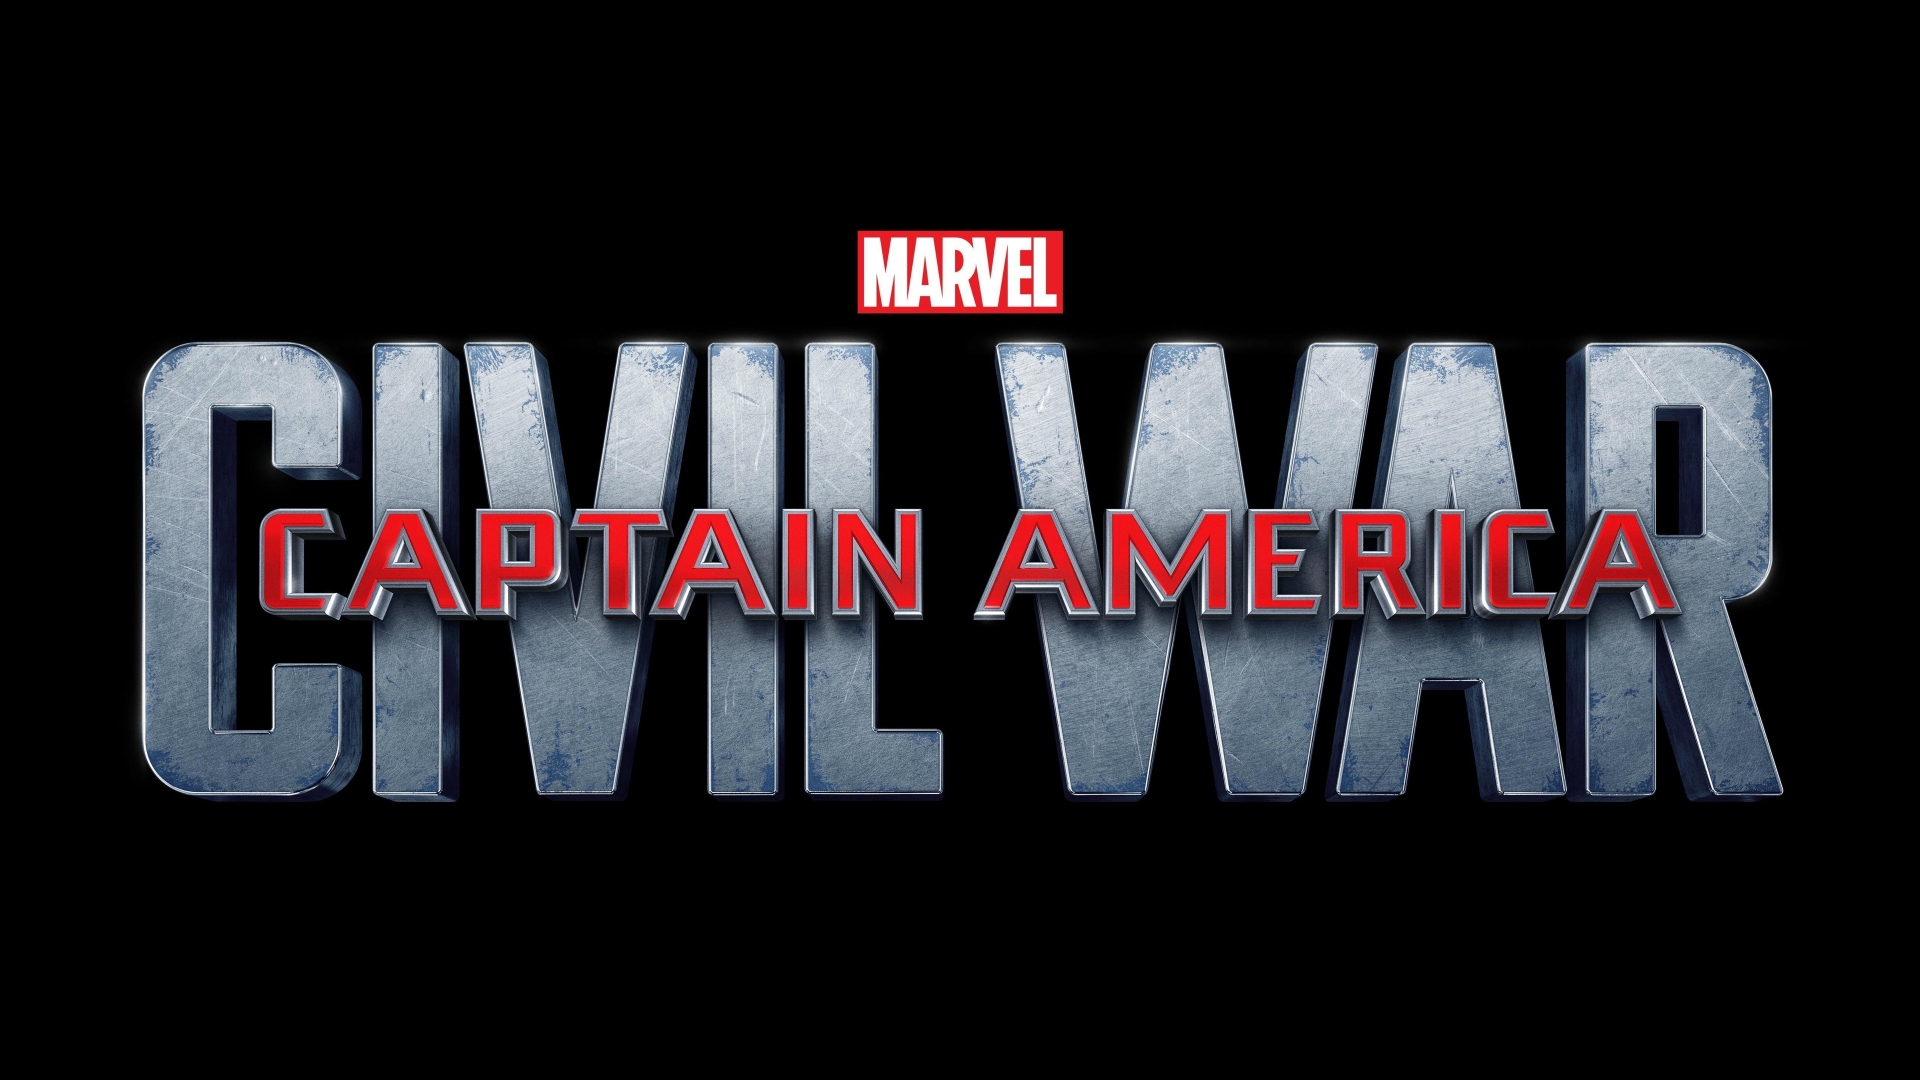 Captain America Civil War Logo for 1920 x 1080 HDTV 1080p resolution